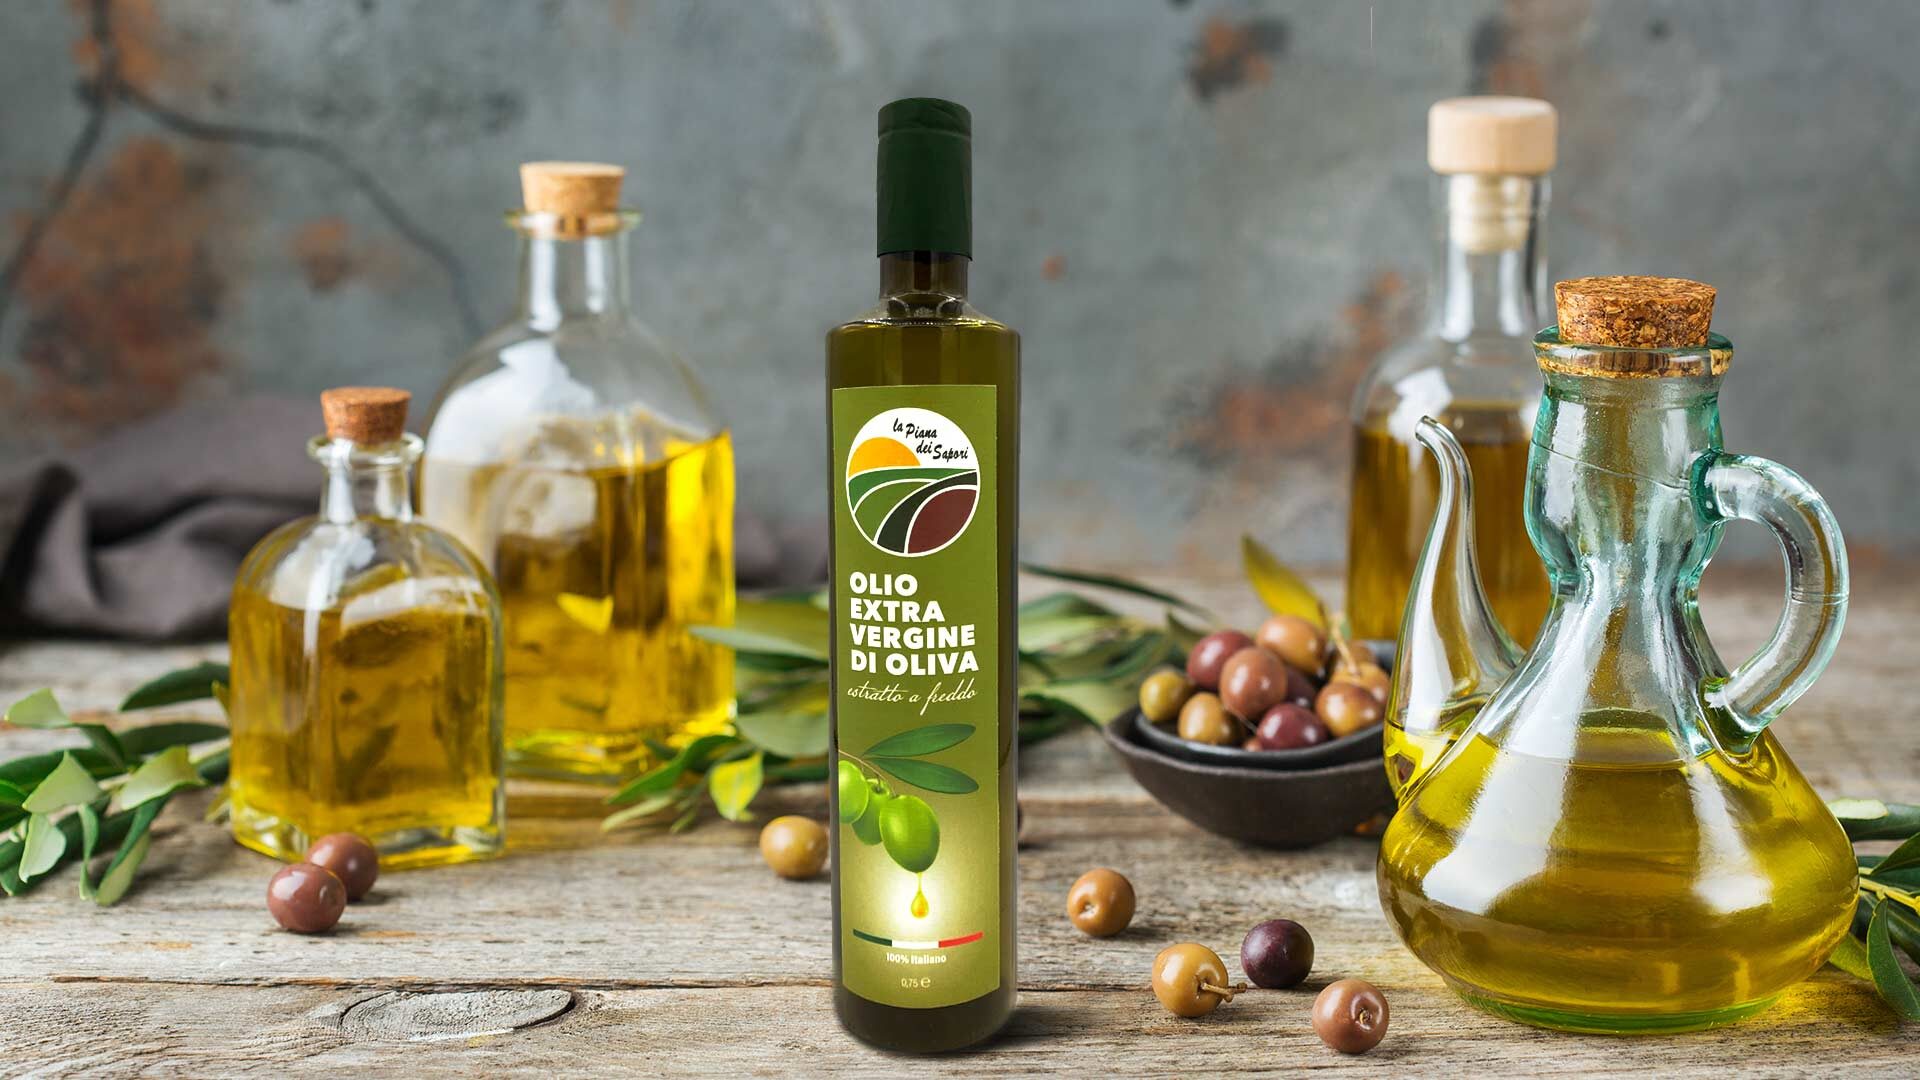 acquista online olio extravergine di oliva